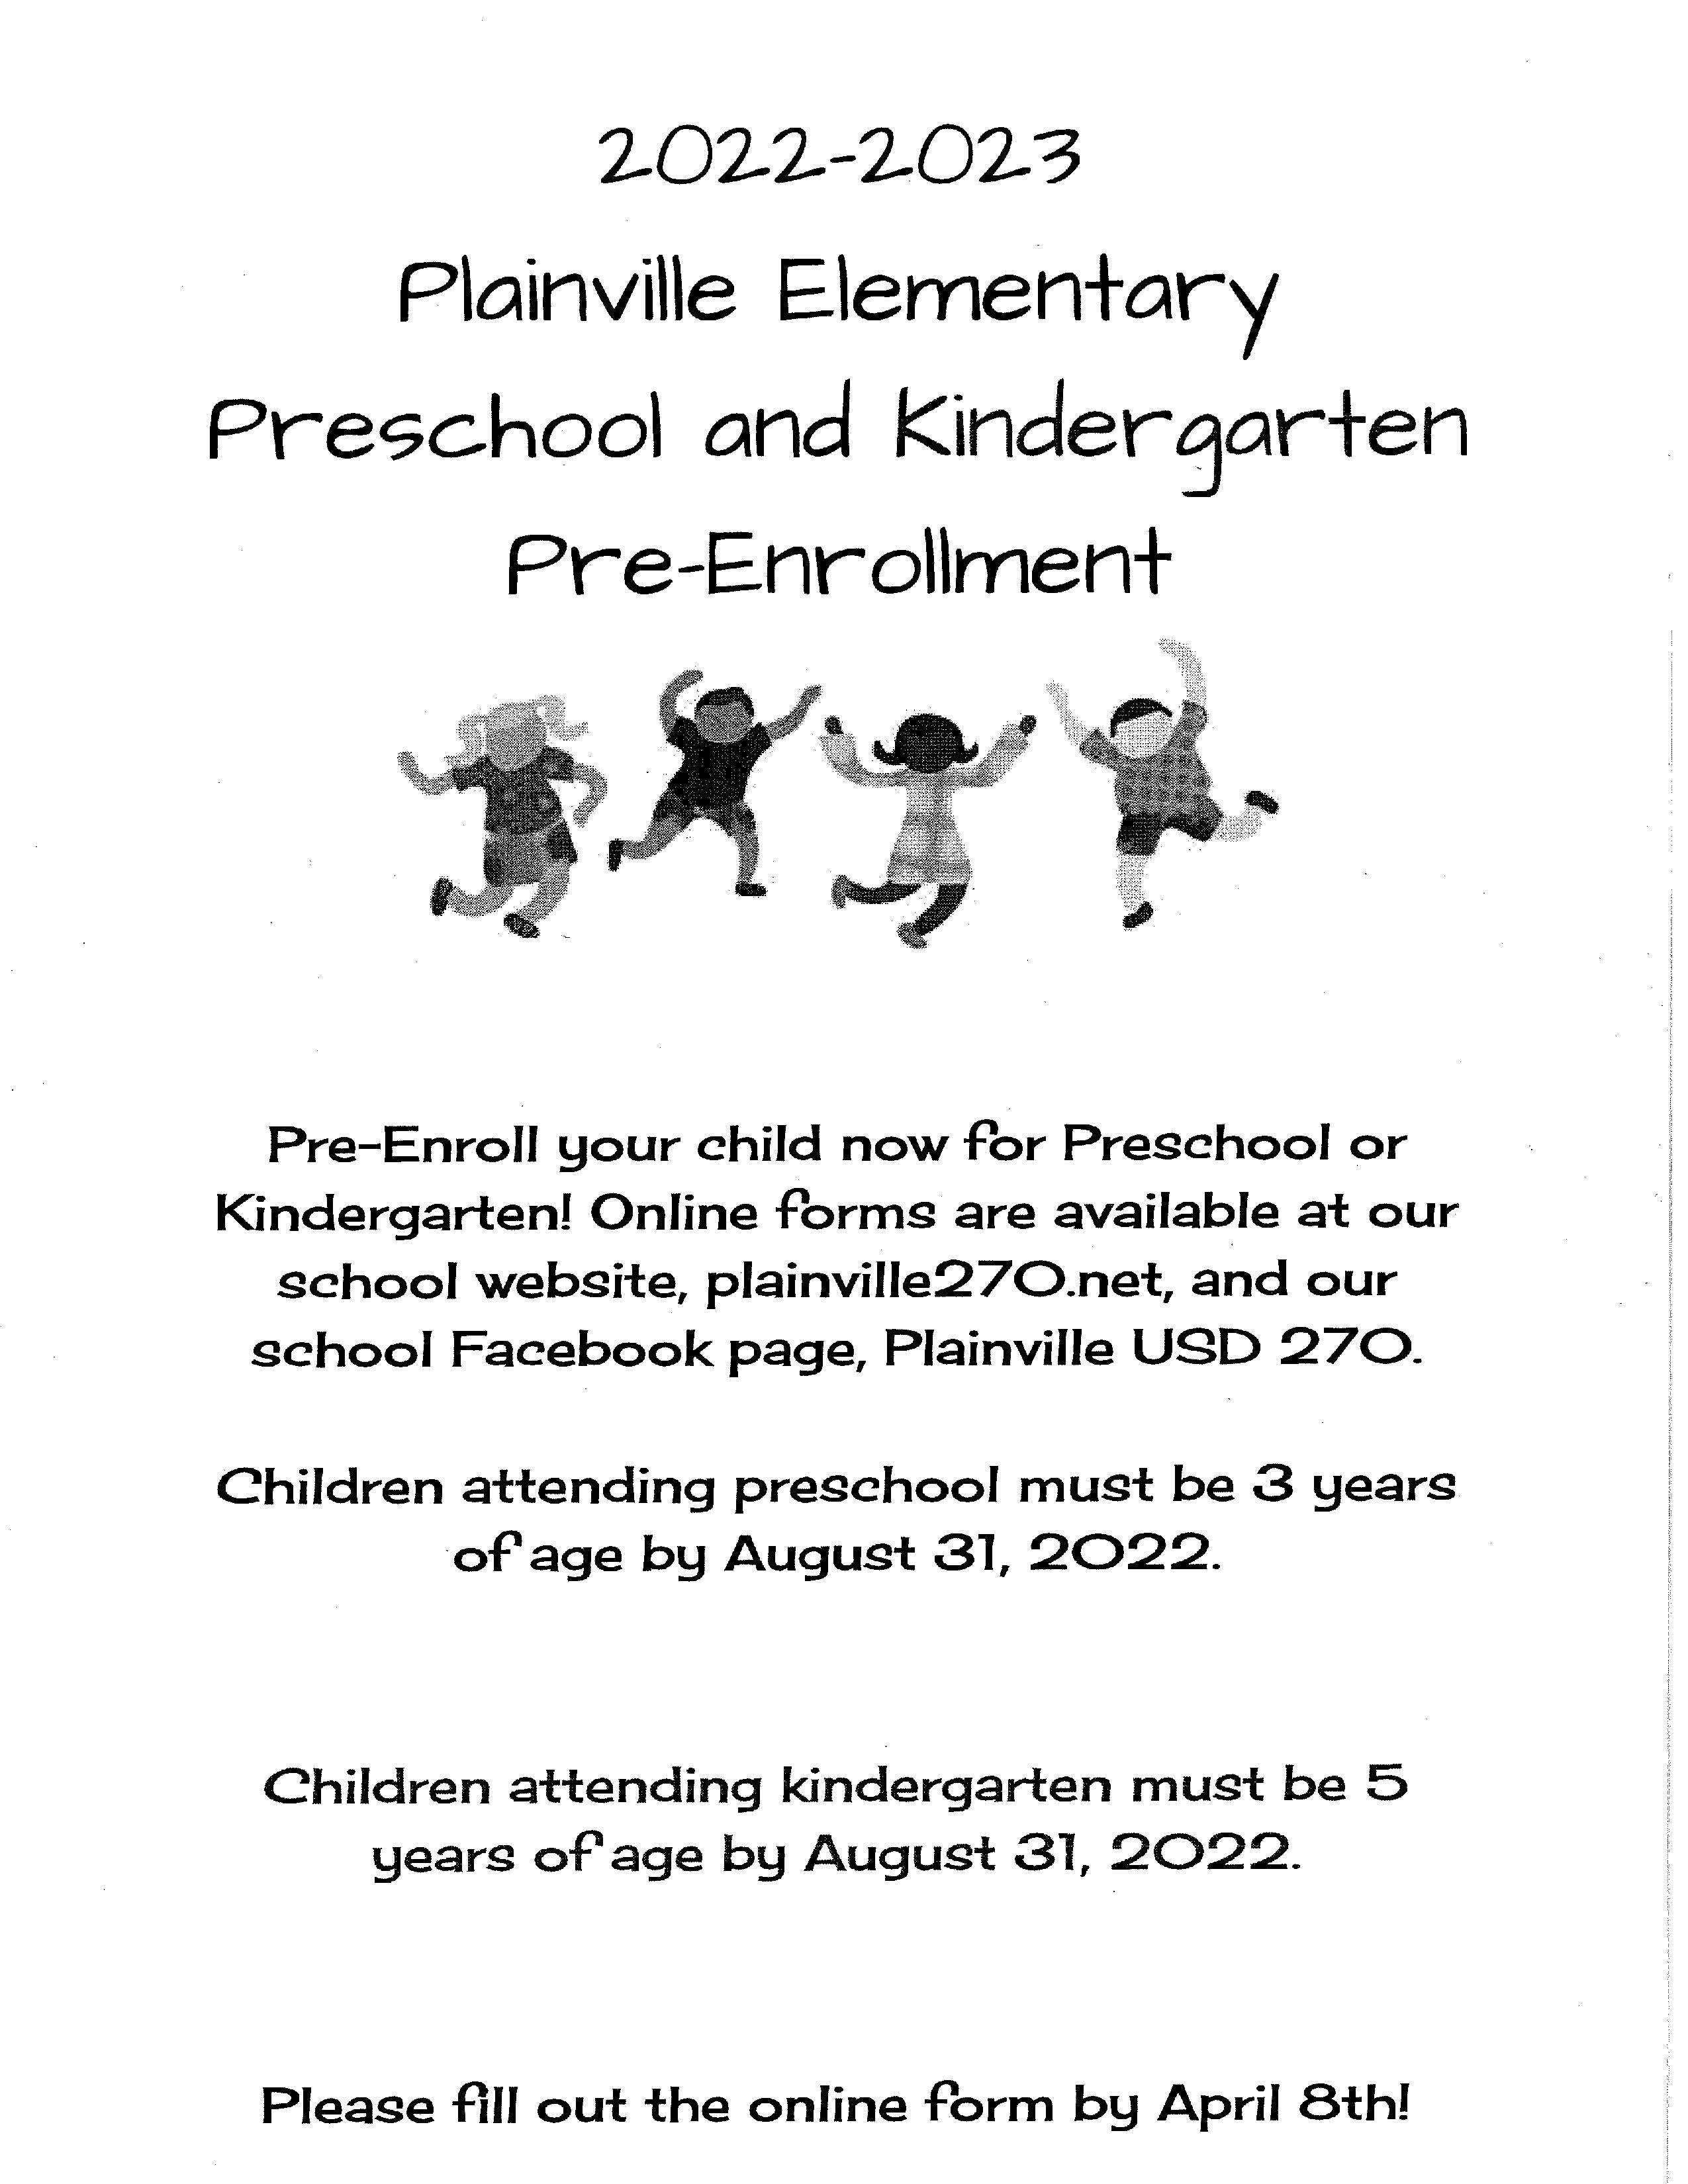 Plainville Kindergarten Roundup